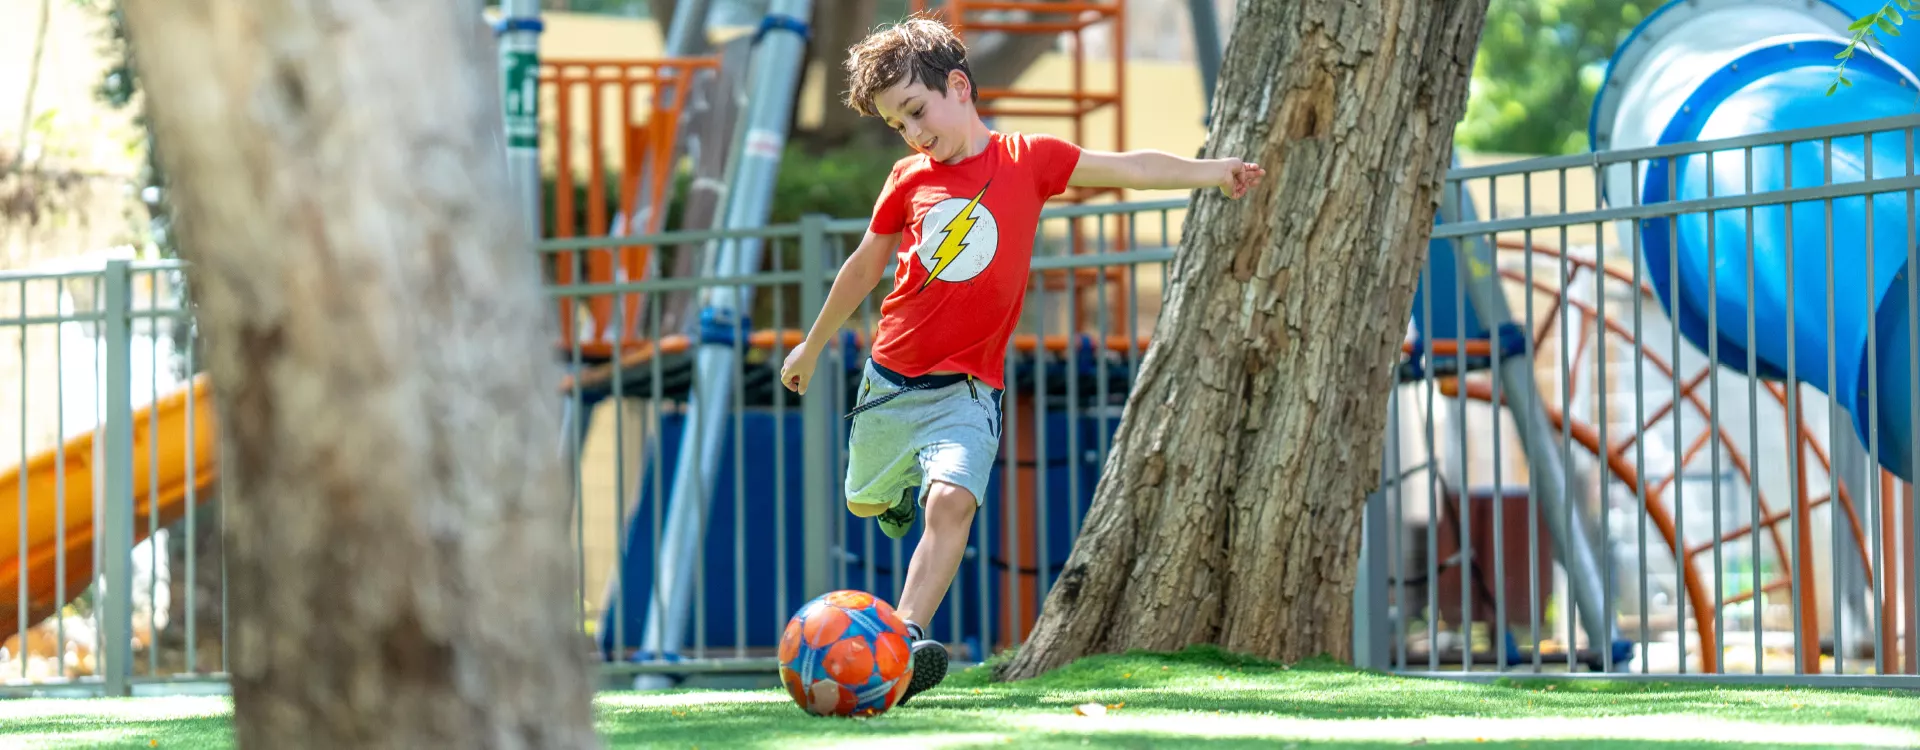 תמונה של ילד משחק כדורגל